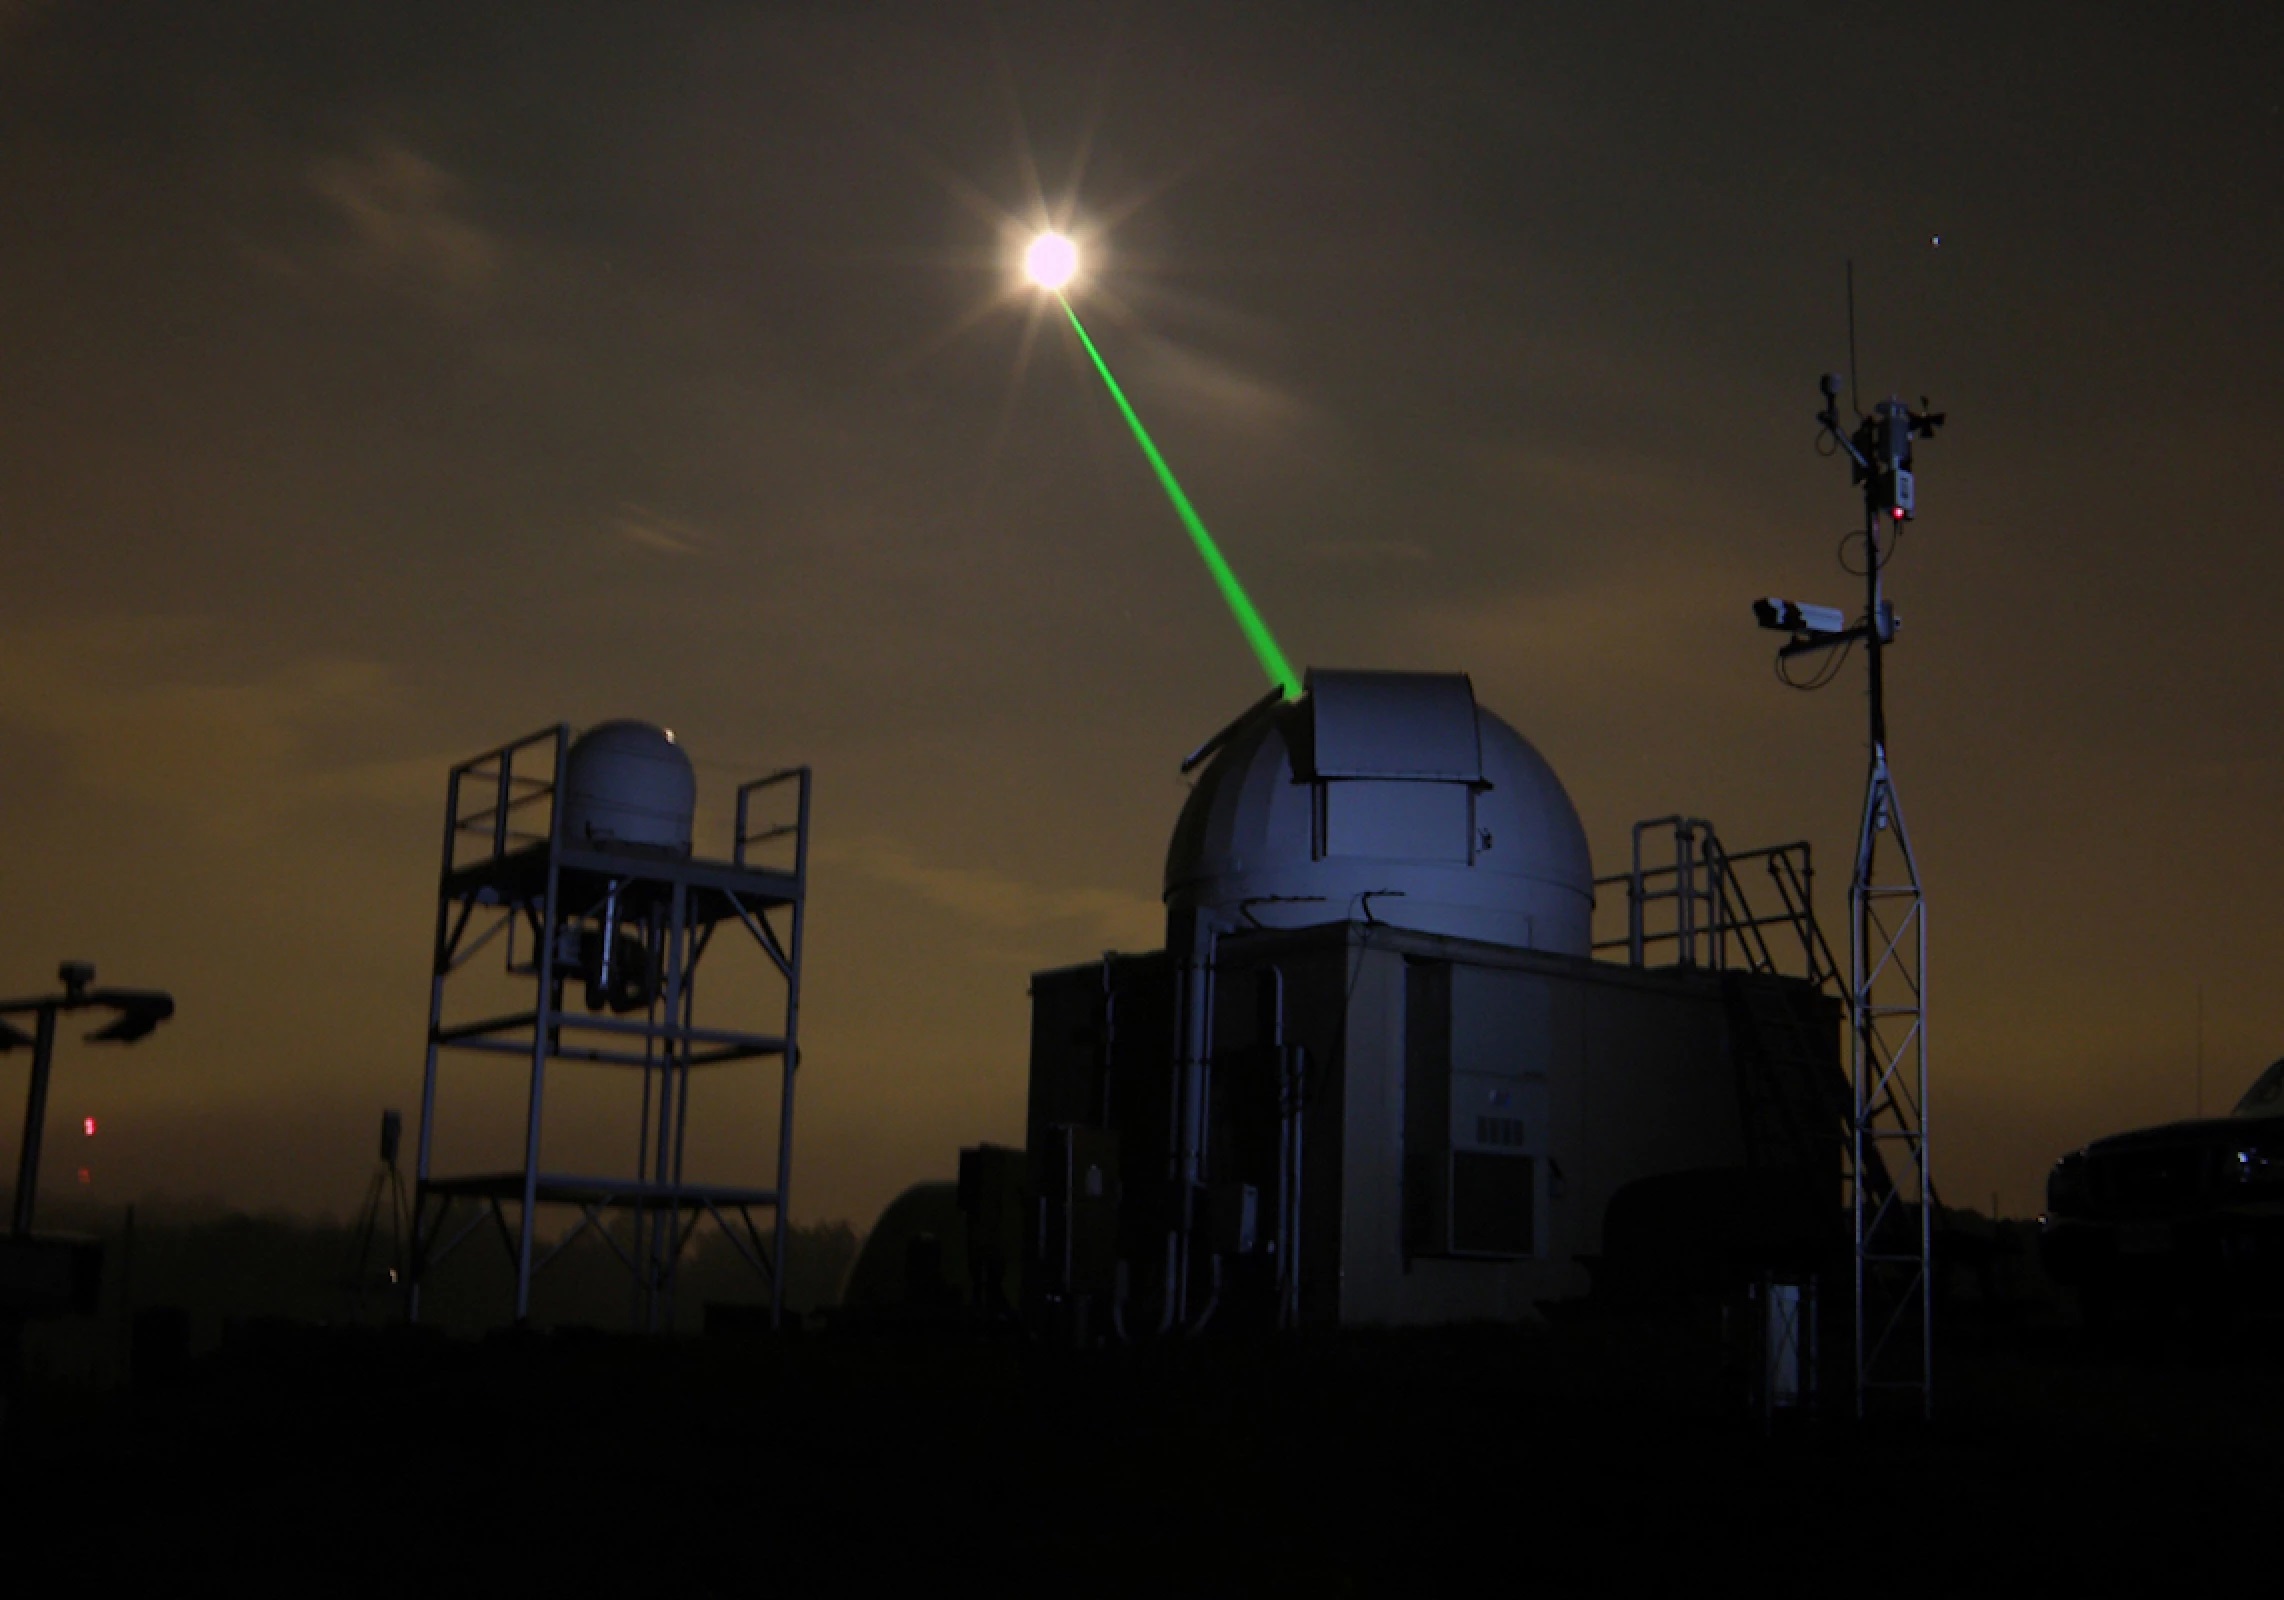 Pozemské lasery pálí na Měsíc. Kredit: Tom Zagwodzki/Goddard Space Flight Center.